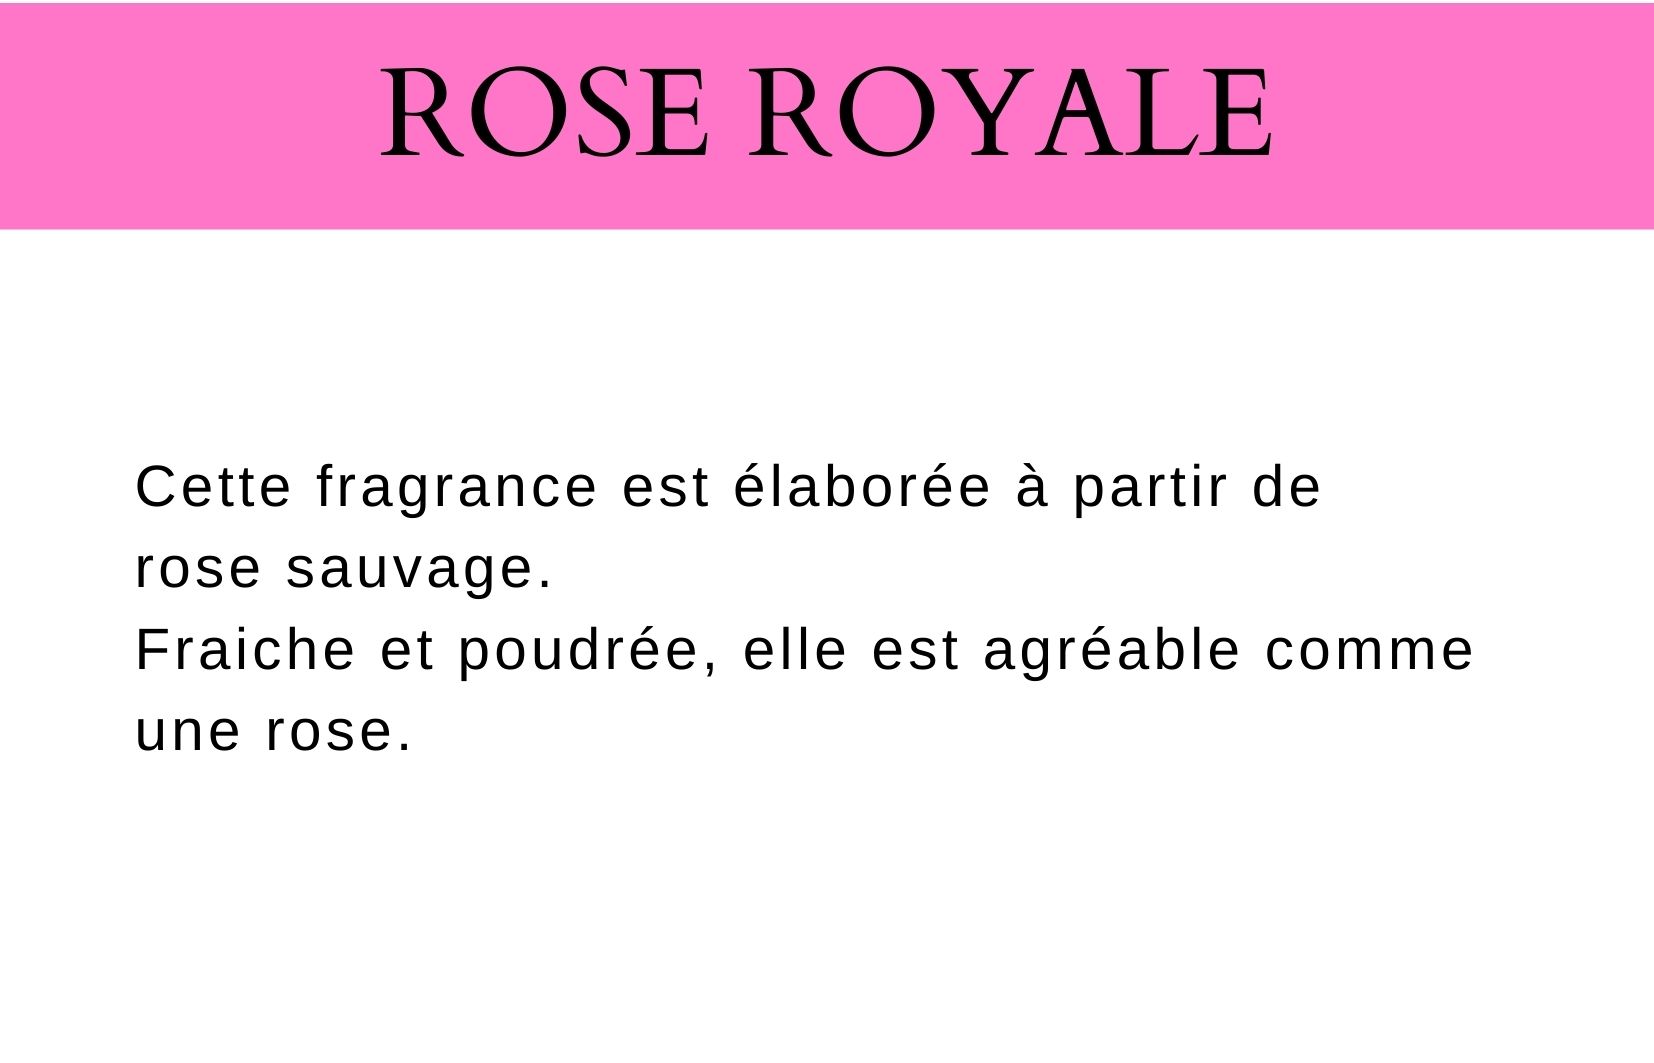 Rose royale fragrance